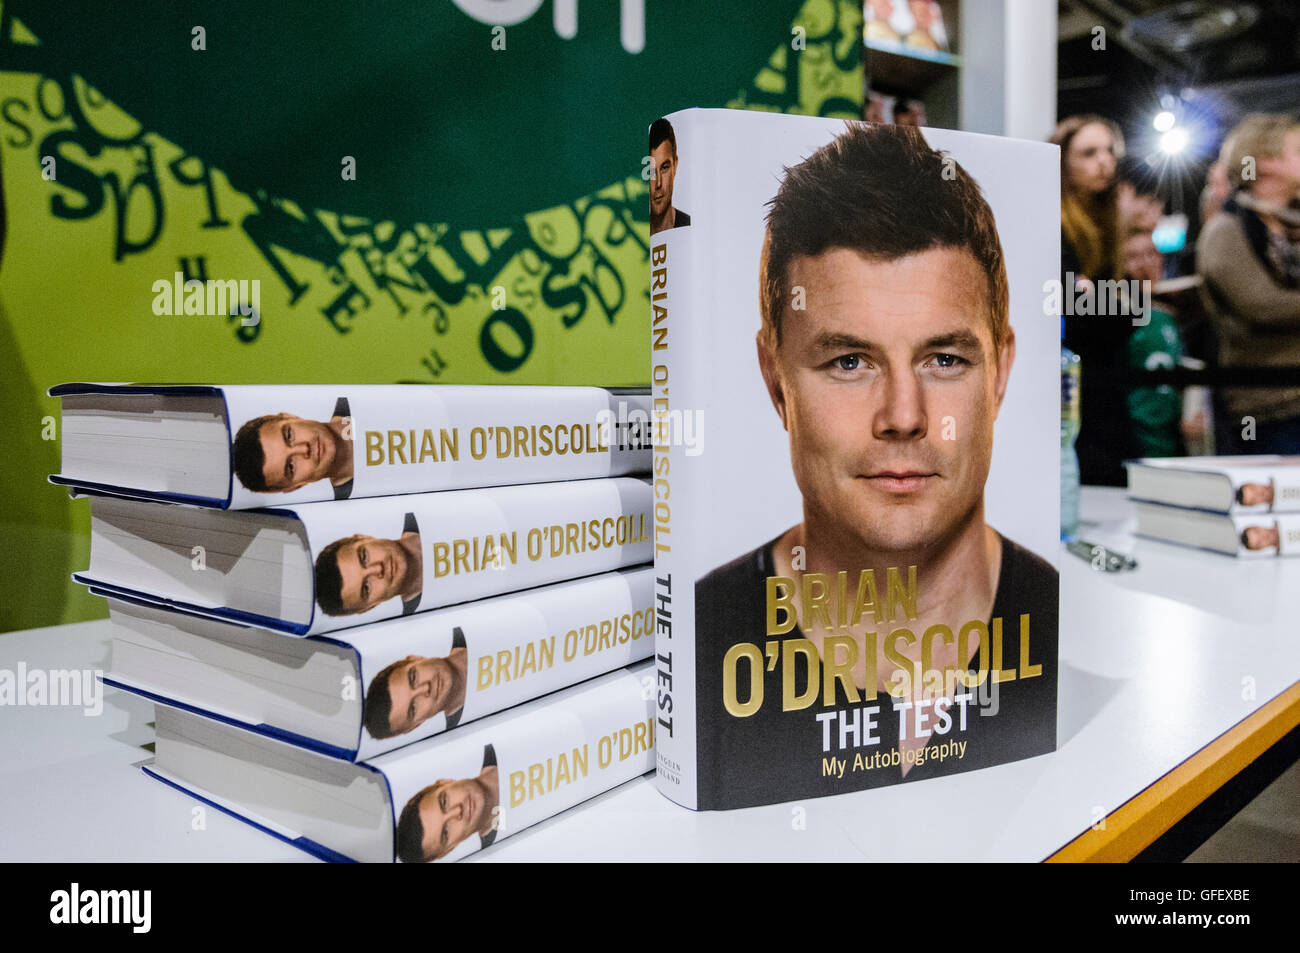 Belfast, Irlande du Nord. 15 Nov 2014 - L'ancien capitaine de Rugby irlandais Brian O'Driscoll signe des exemplaires de son autobiographie "l'essai". O'Driscoll est le plus grand joueur dans l'histoire du Rugby, jouer pour l'Irlande 133 fois, et 8 fois pour les Lions britanniques et irlandais. Banque D'Images